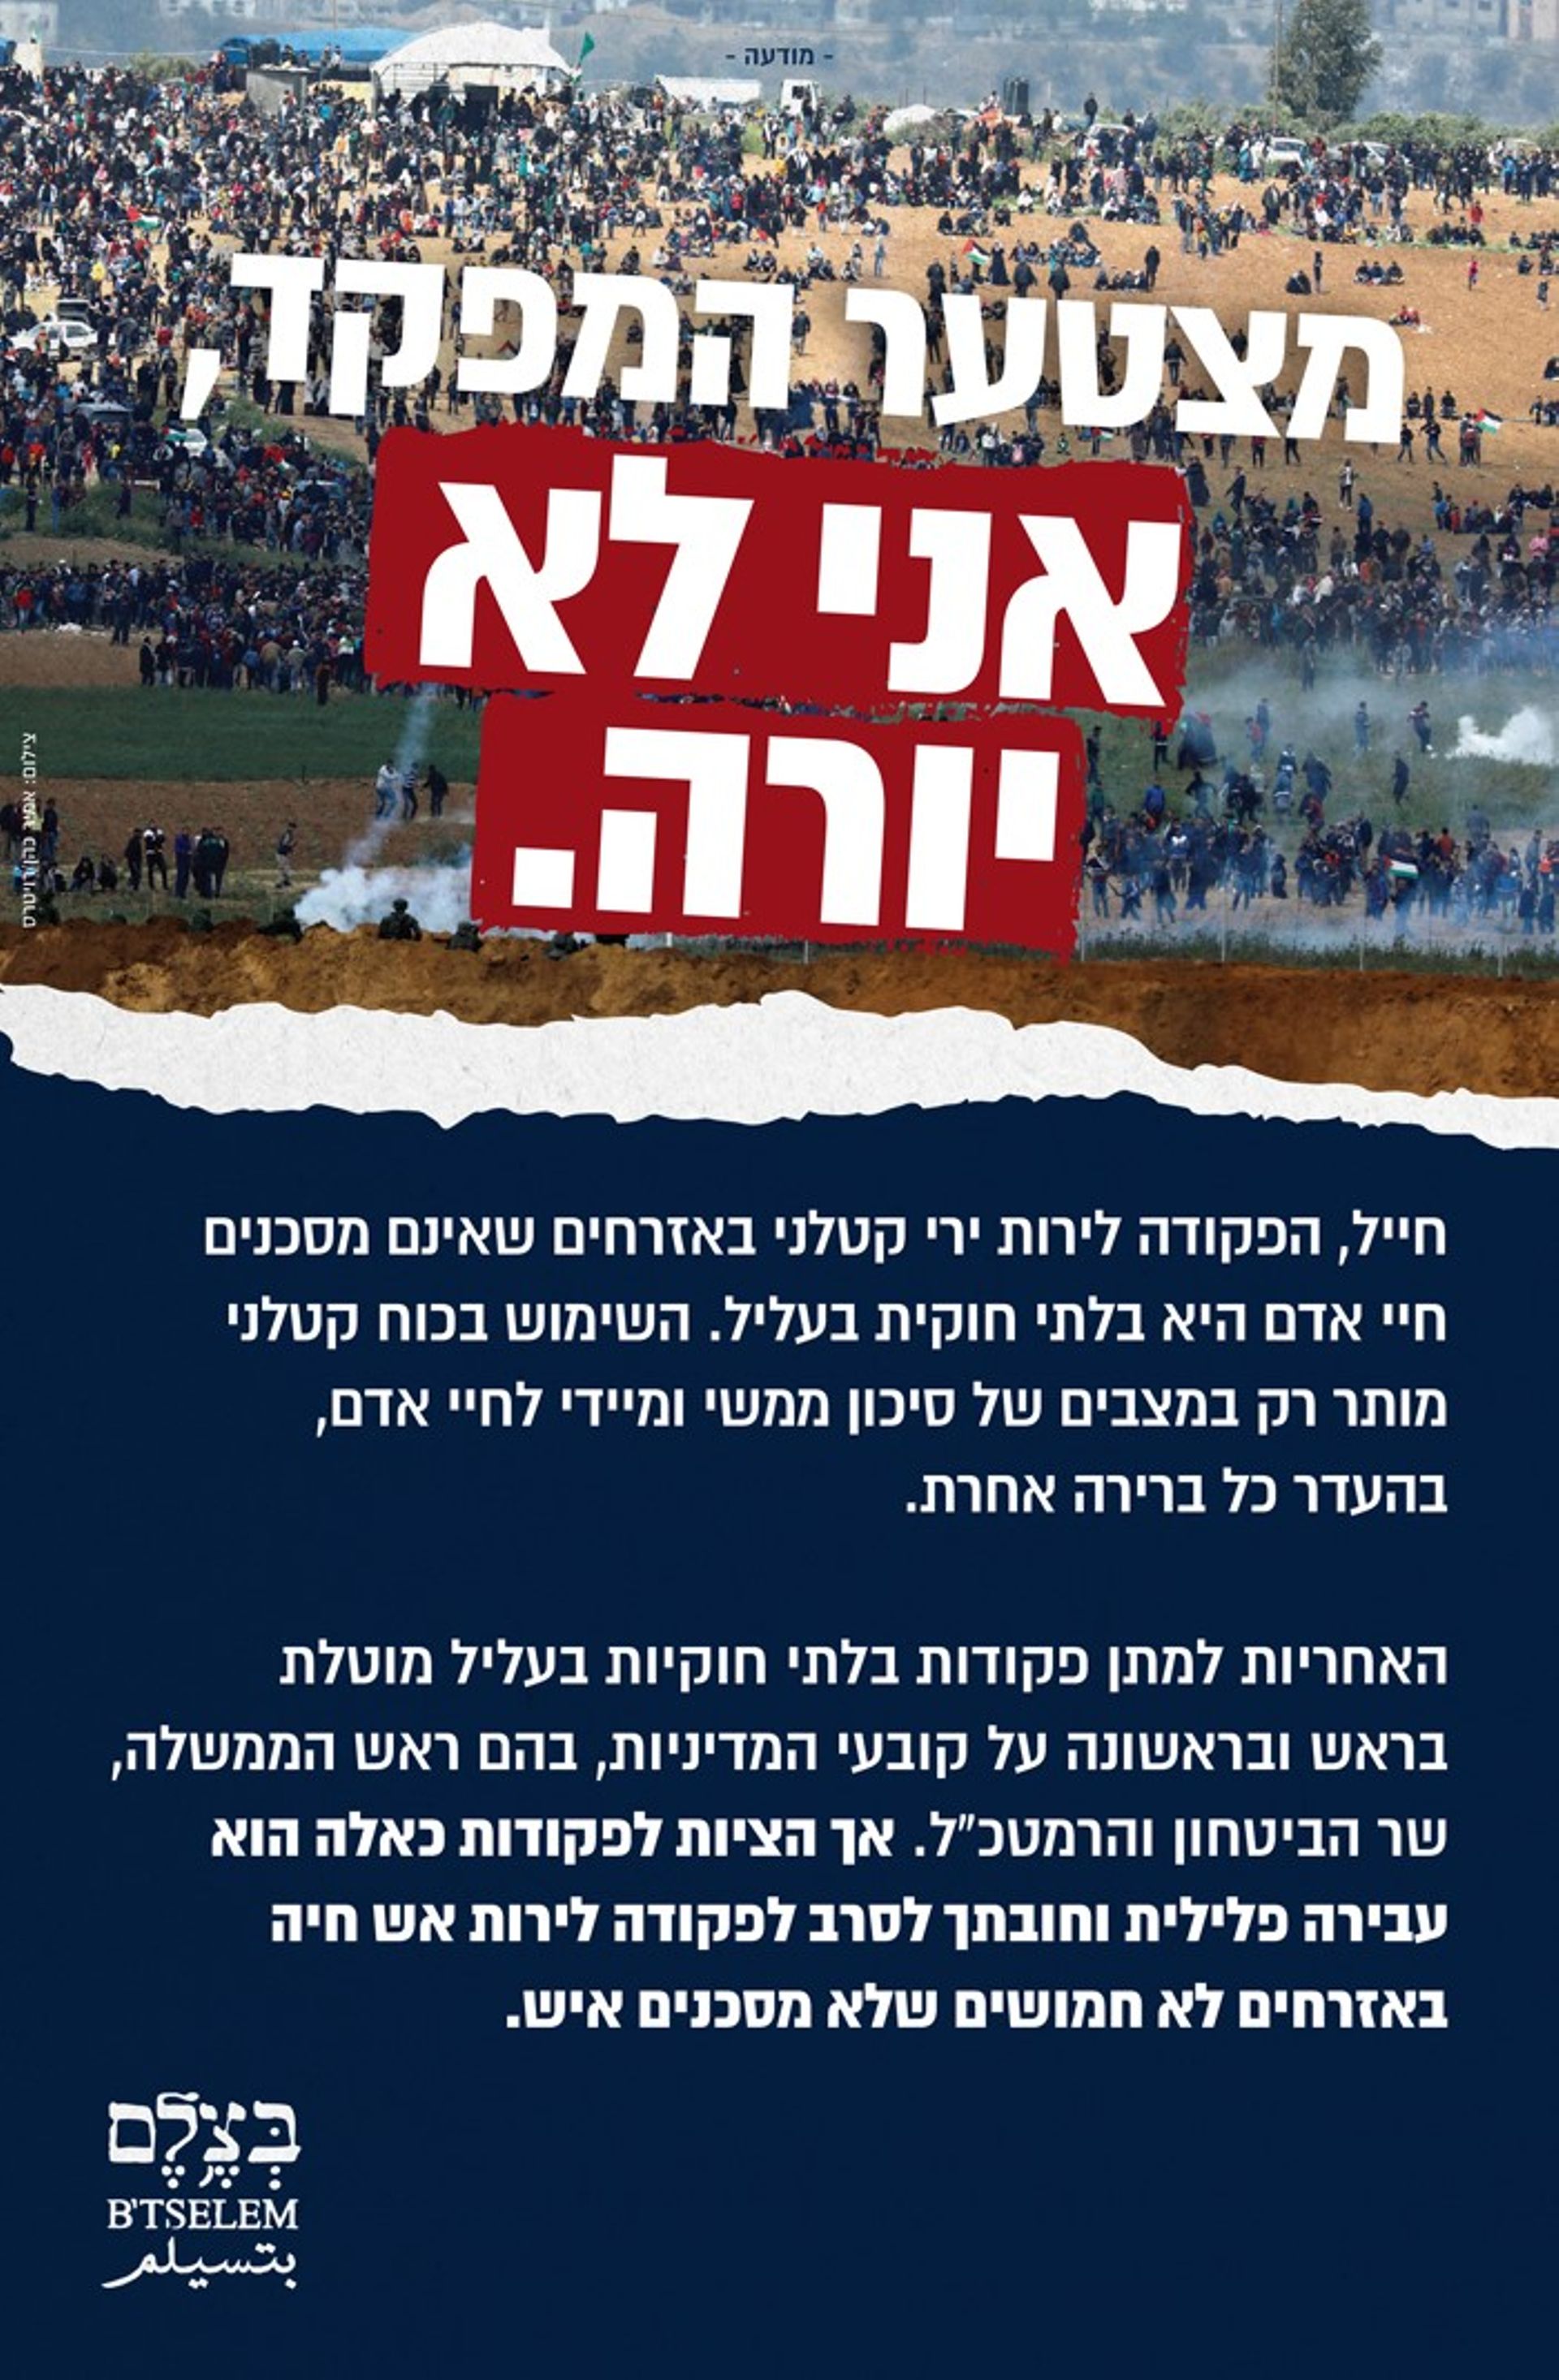 La publicité diffusée par B'tselem s'adresse directement aux militaires israéliens: "Soldat, les consignes de tirs susceptibles de provoquer la mort de civils ne présentant pas de danger pour des vies humaines, sont illégales".